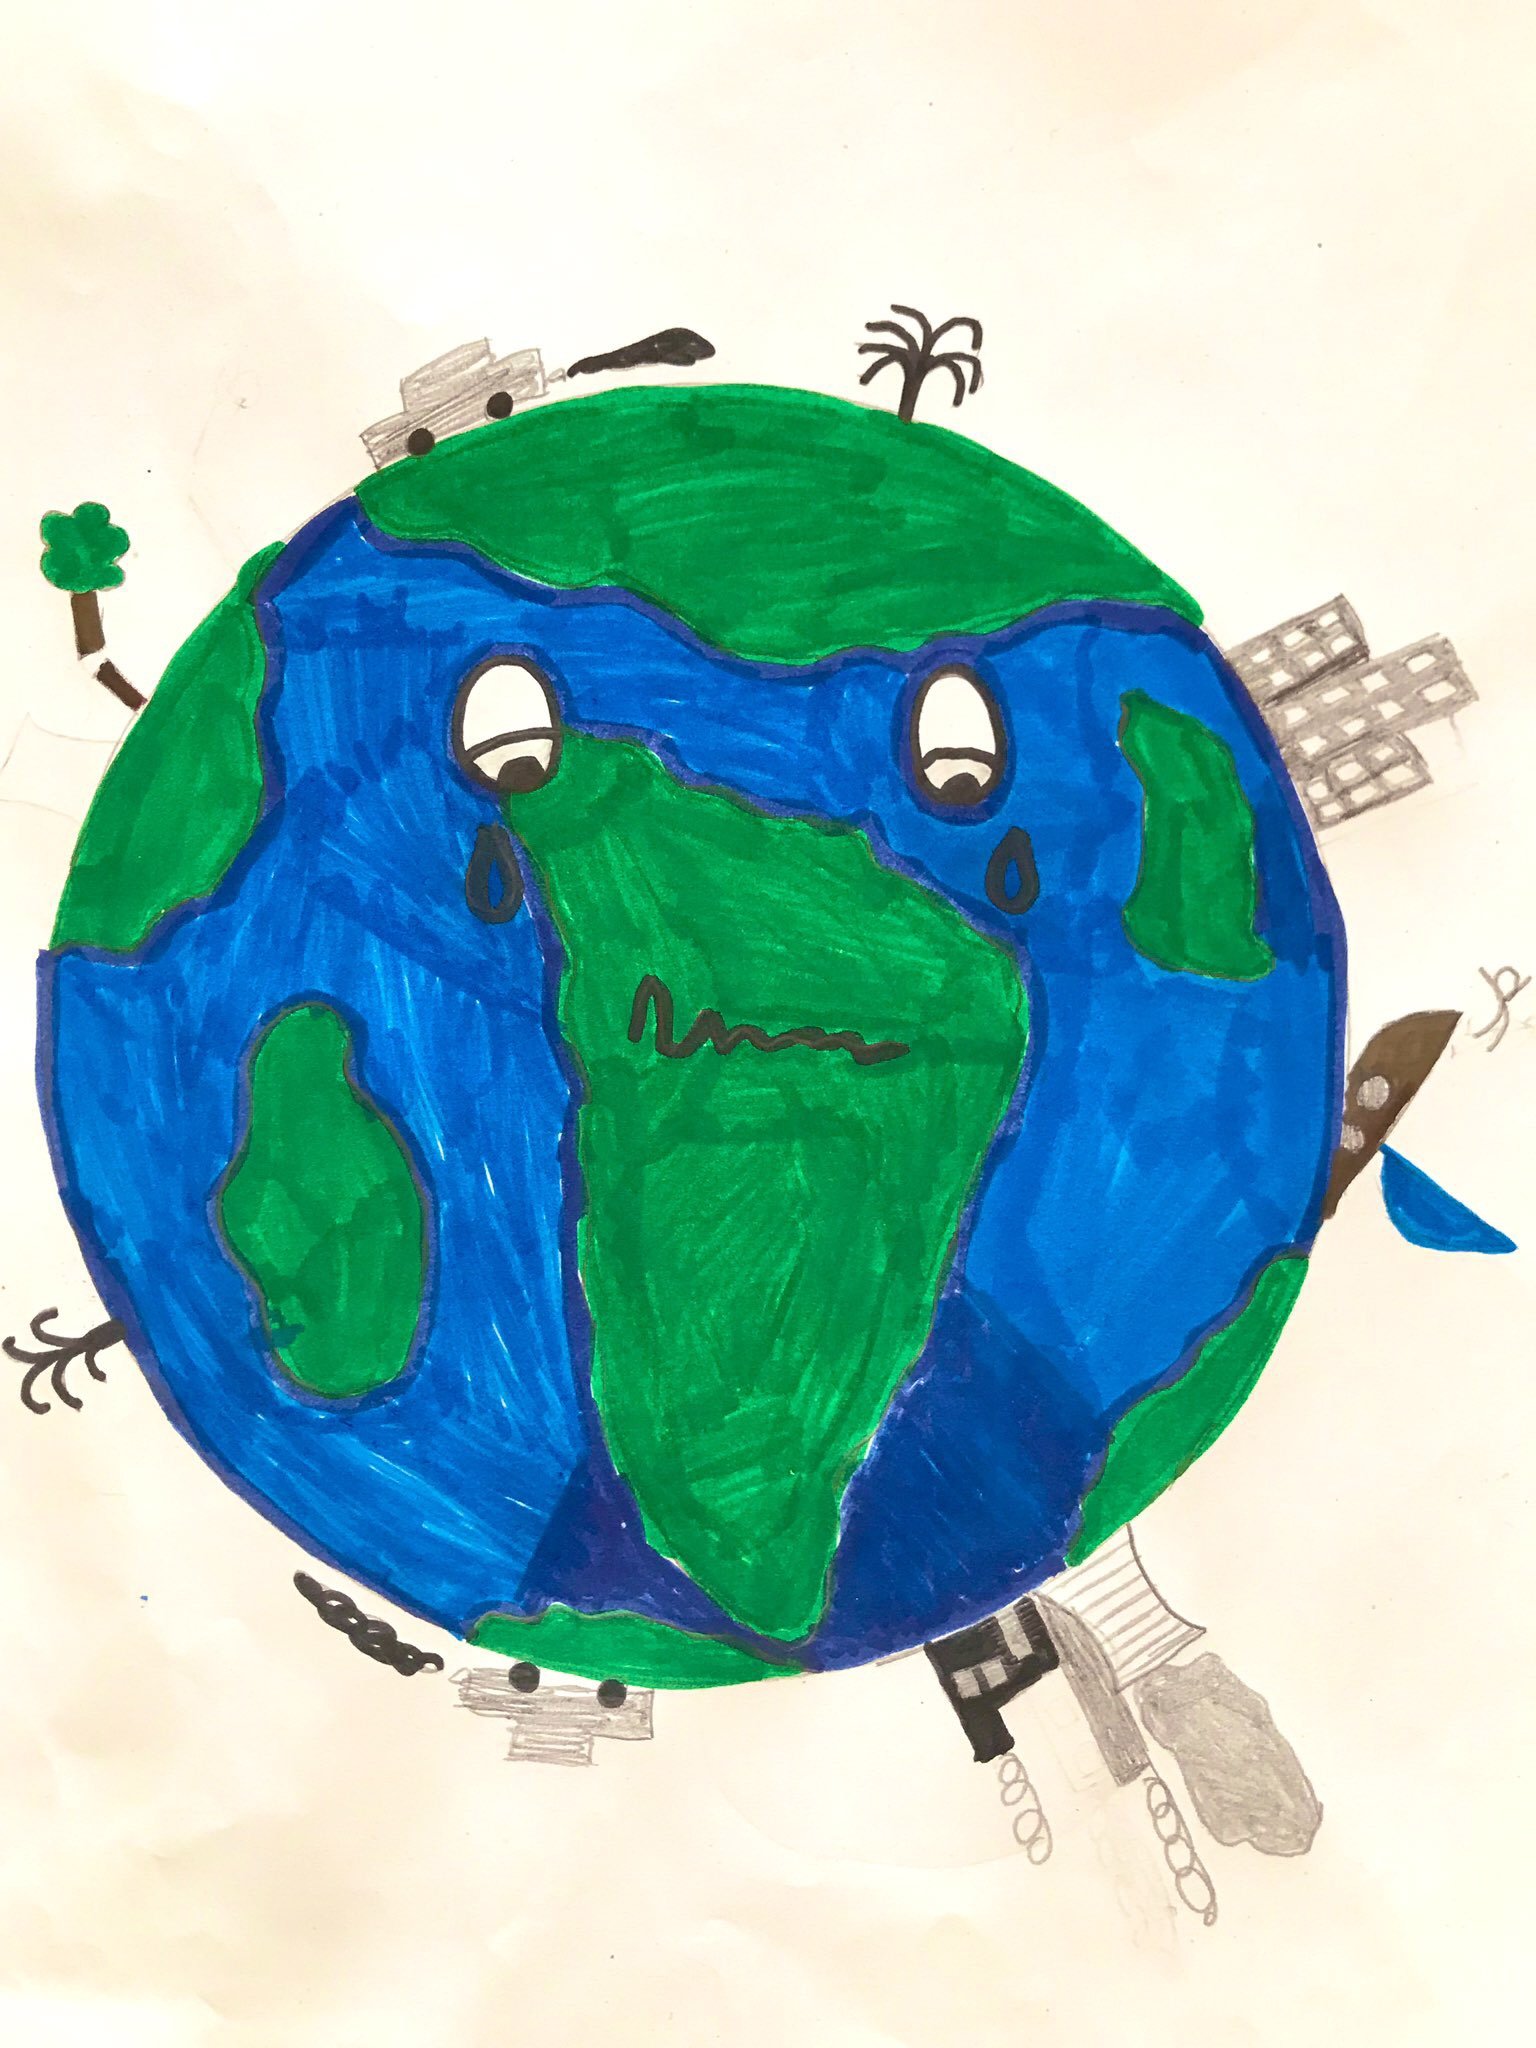 Es ist eine Zeichnung von der Erde und verschiedenen Klima- und Umweltpolitischen Themen zu sehen